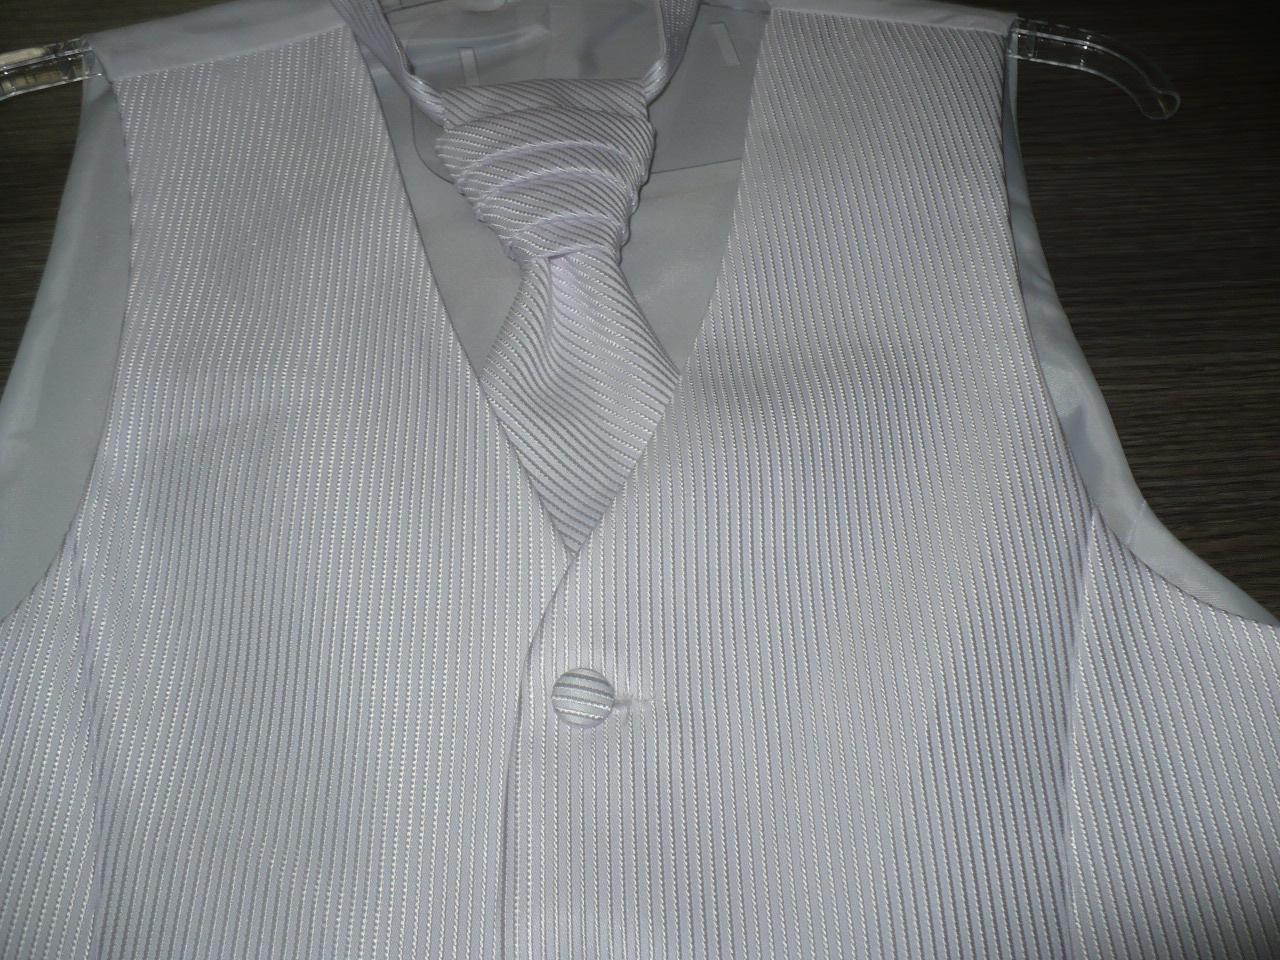 Pánska vesta s francúzskou kravatou - Obrázok č. 1